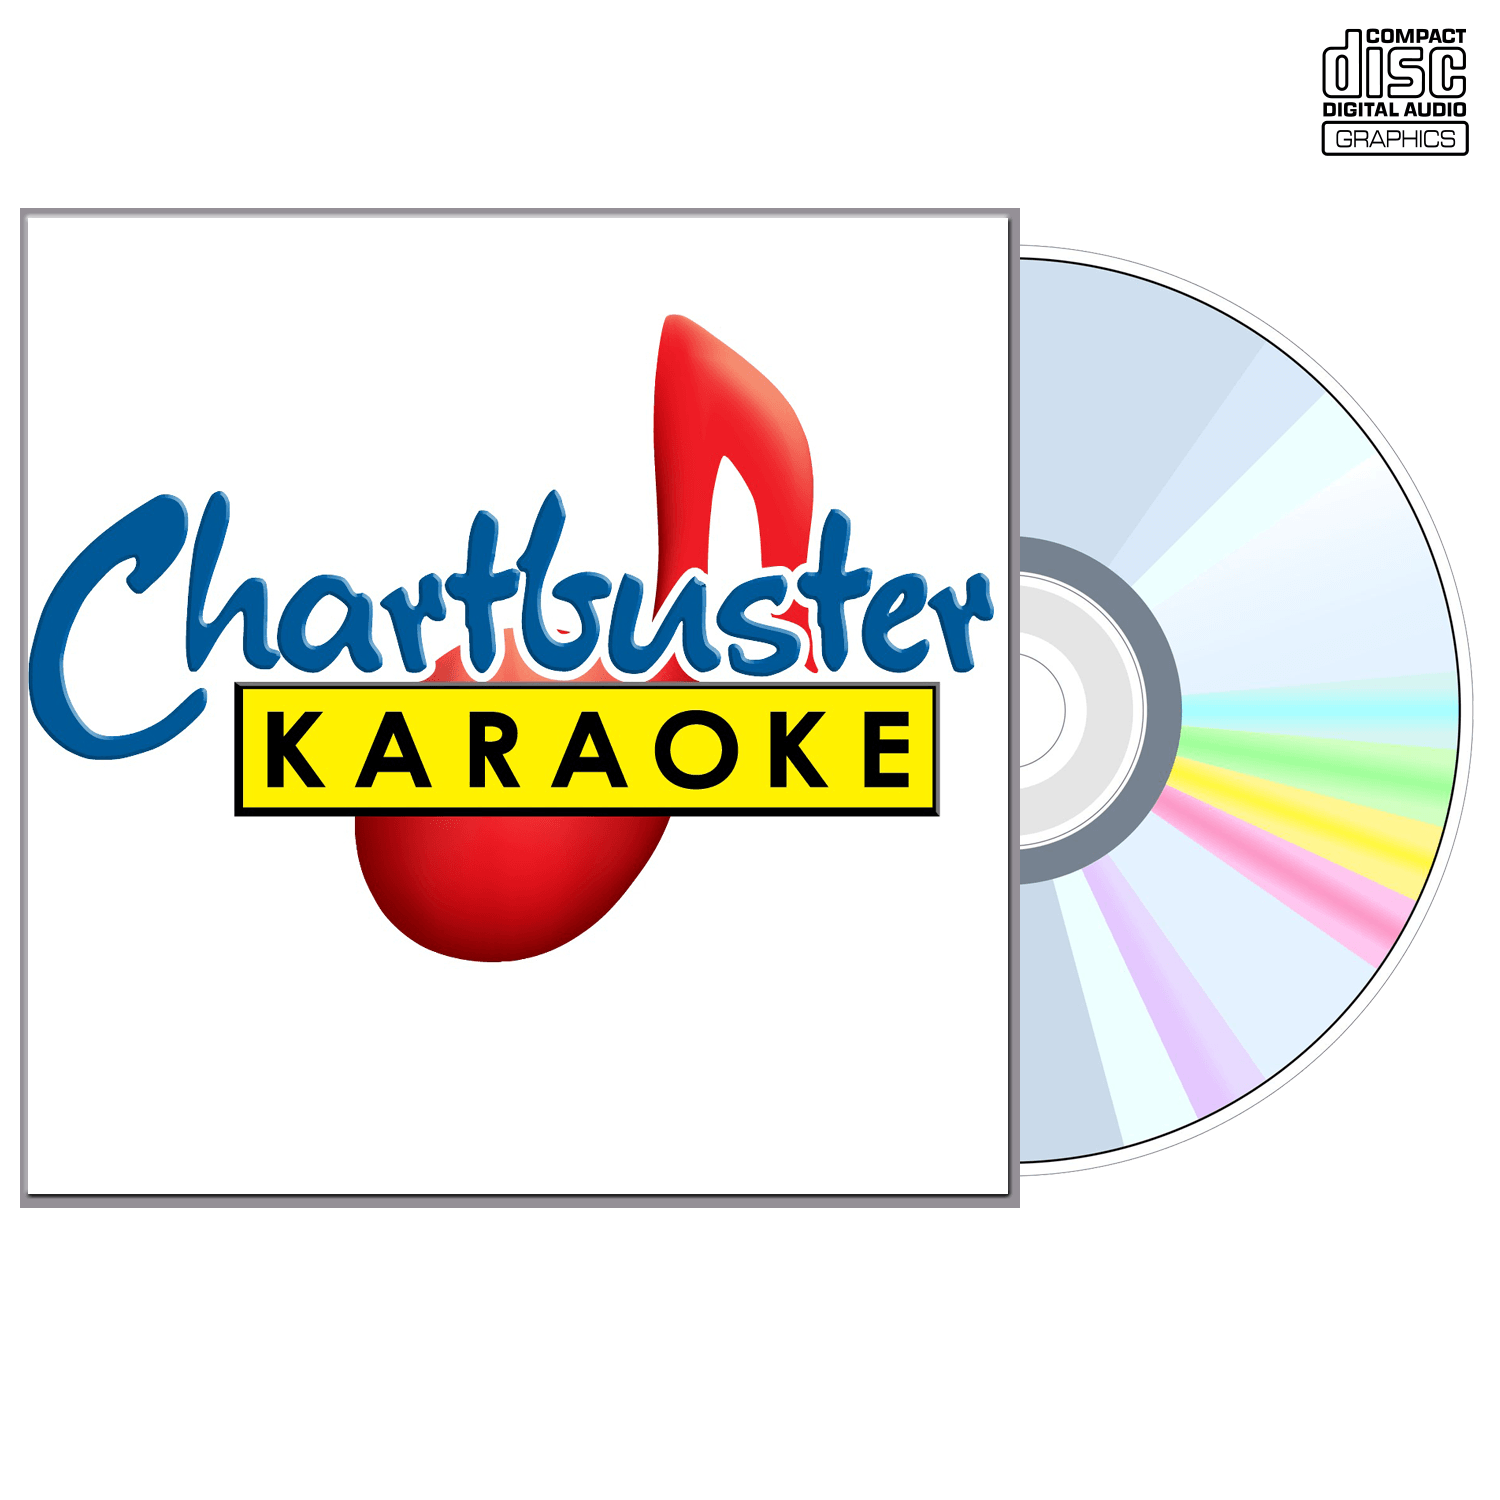 Jerry Lee Lewis - CD+G - Chartbuster Karaoke - Karaoke Home Entertainment